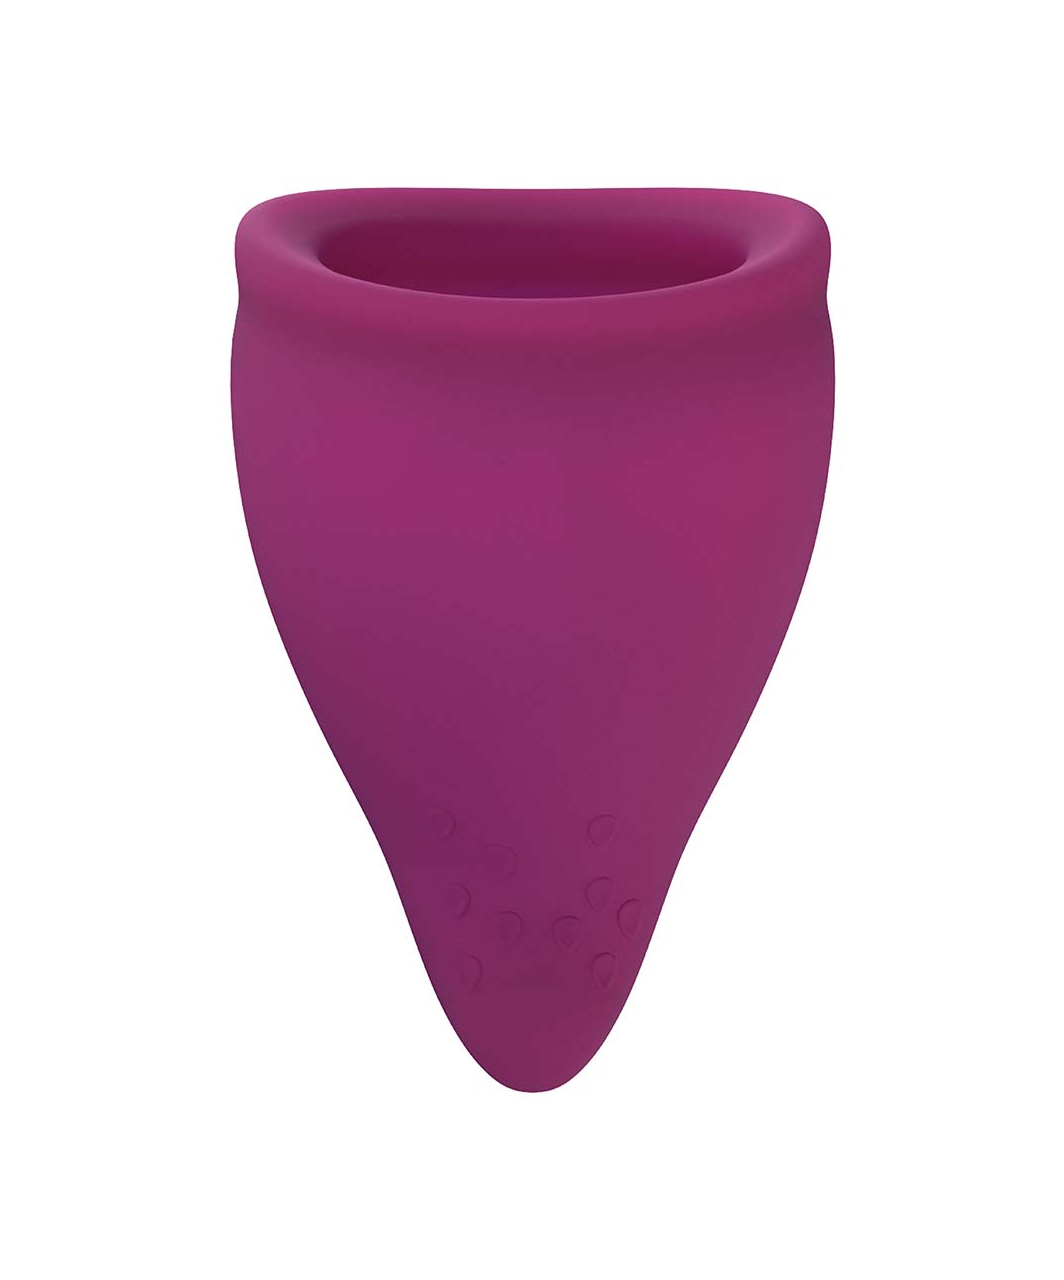 Fun Factory Fun Cup menstrual cup